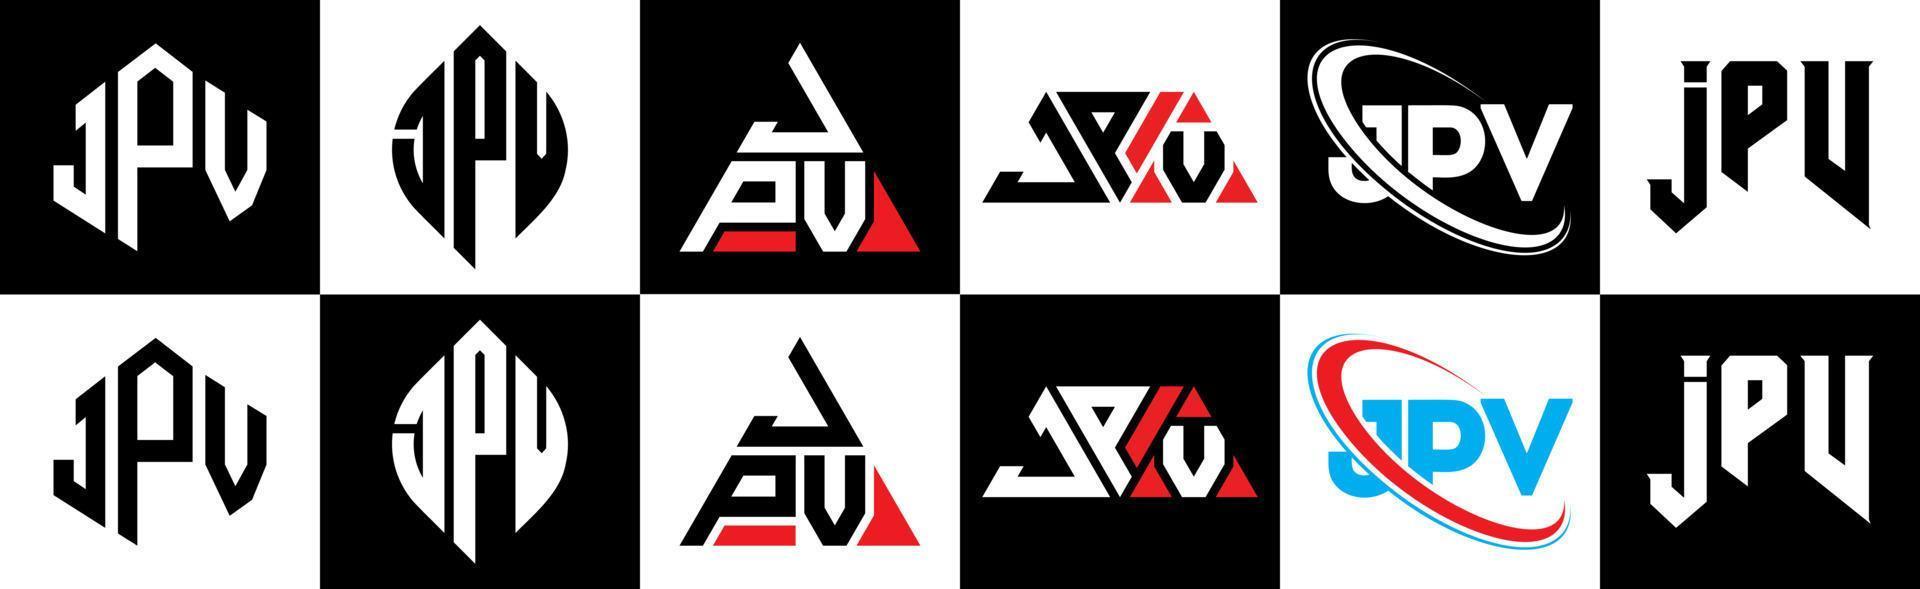 création de logo de lettre jpv en six styles. jpv polygone, cercle, triangle, hexagone, style plat et simple avec logo de lettre de variation de couleur noir et blanc dans un plan de travail. jpv logo minimaliste et classique vecteur